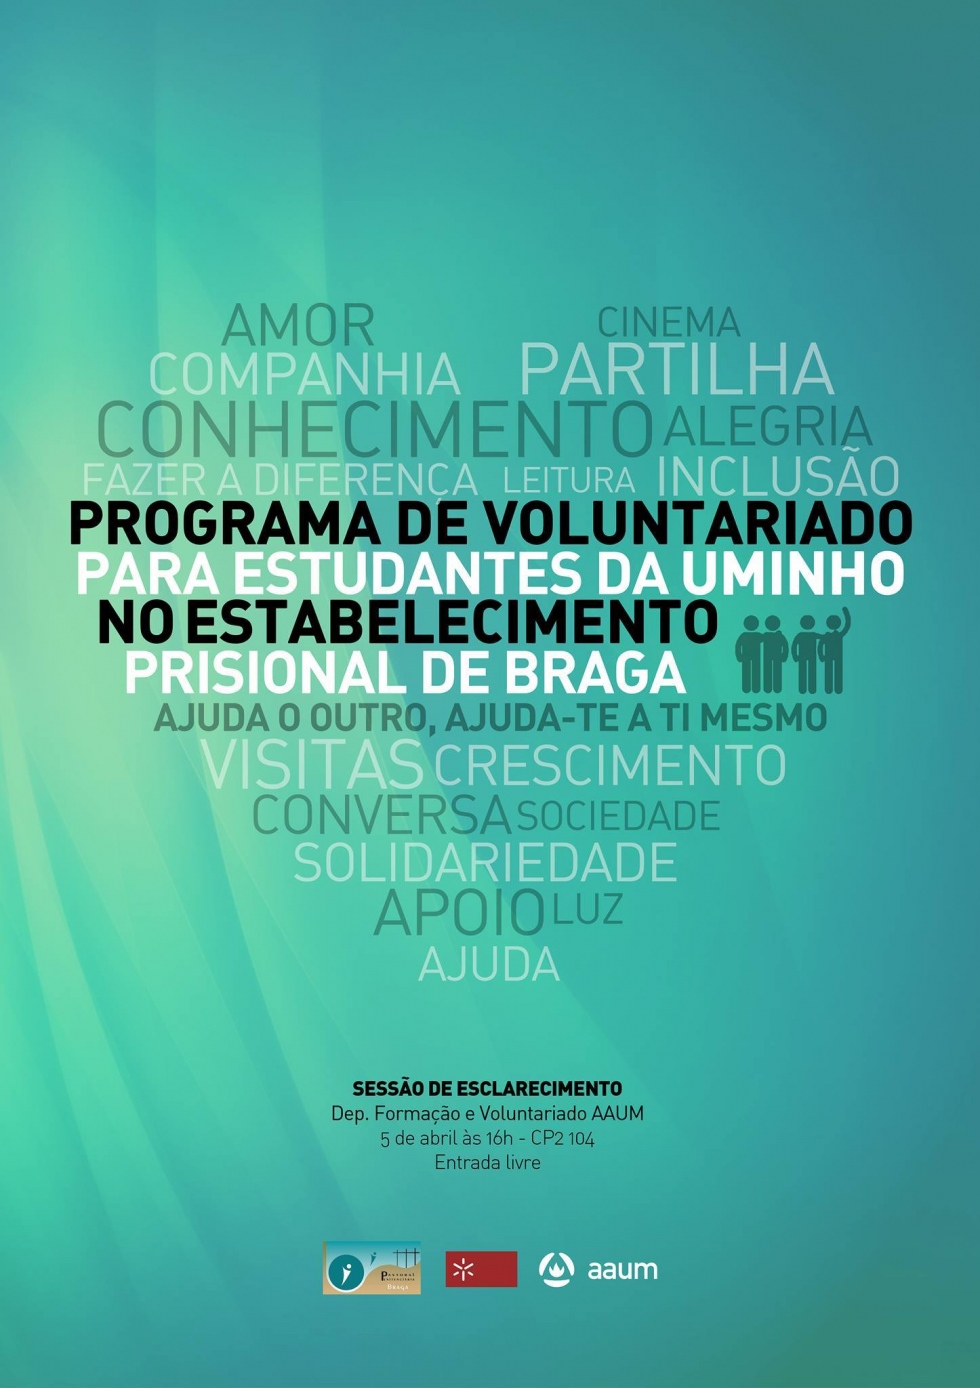 AAUM cria programa de voluntariado na prisão de Braga